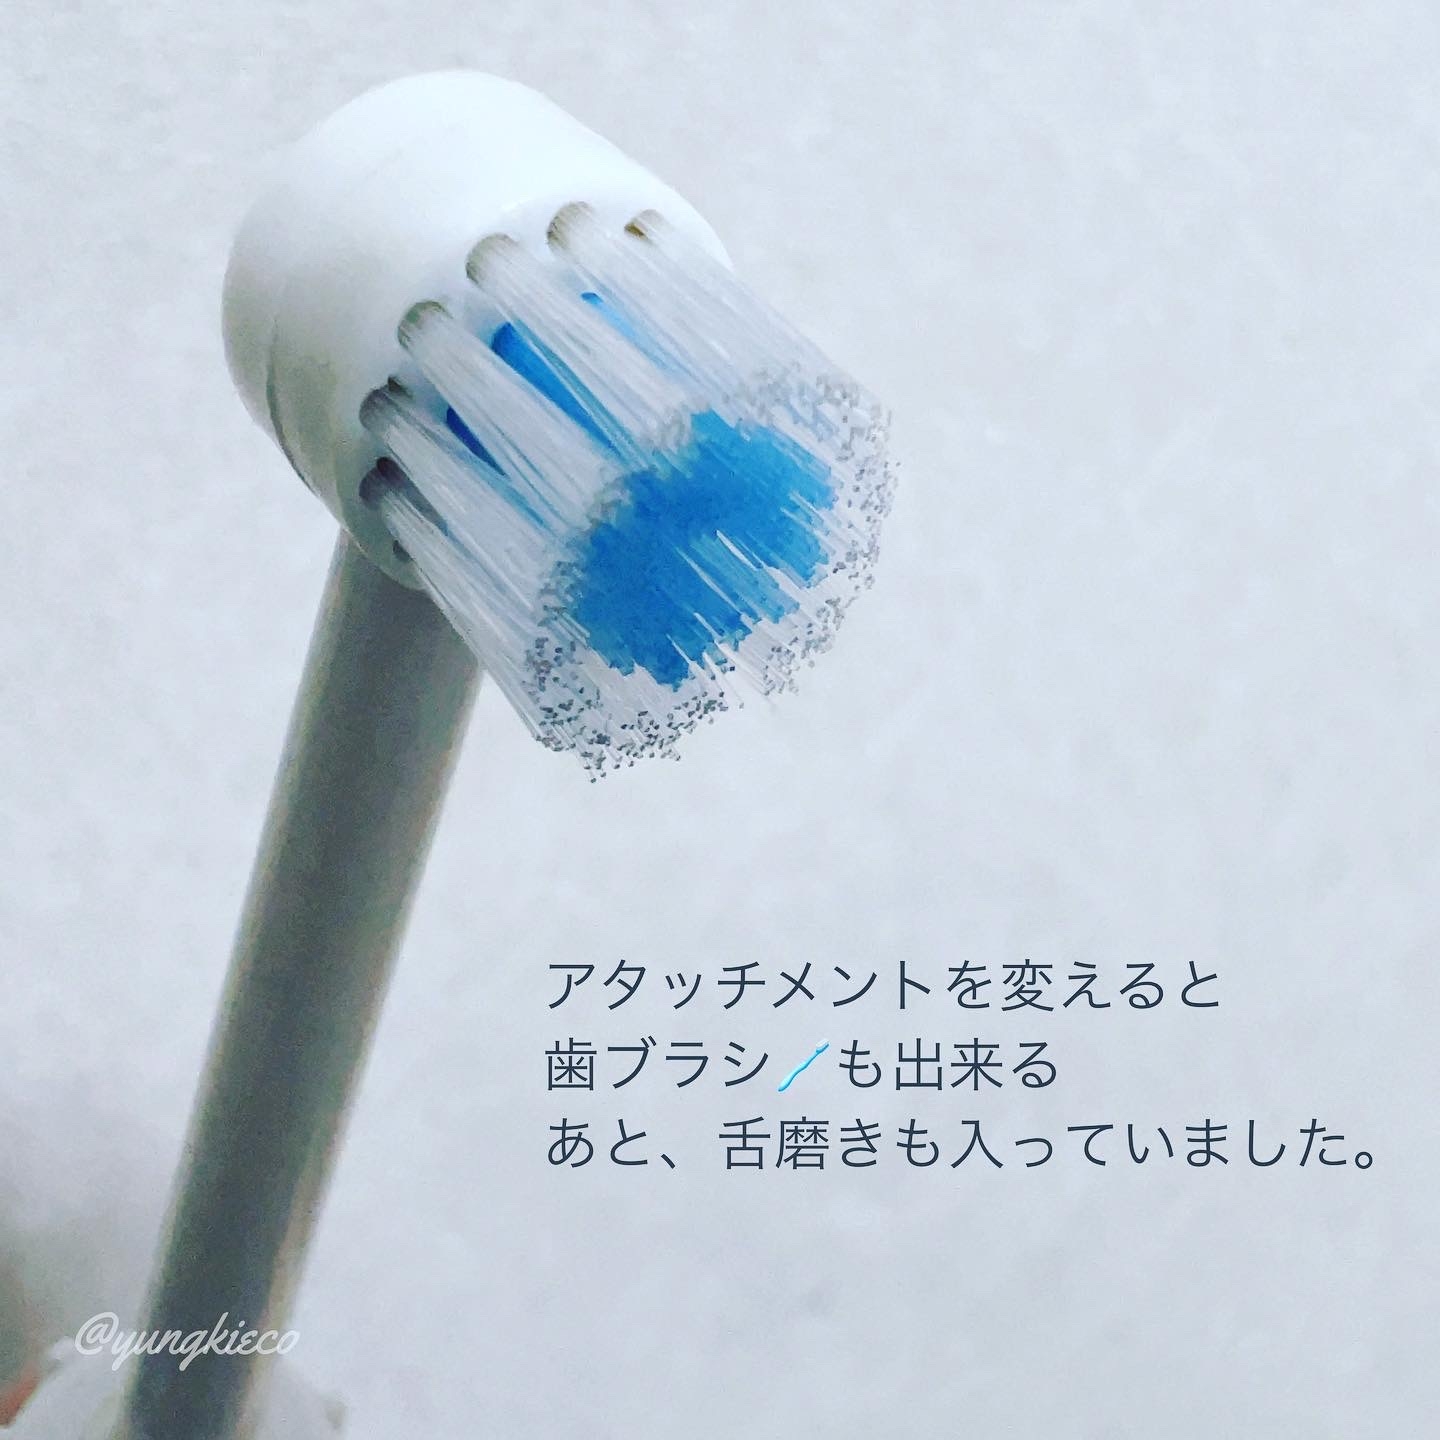 DGV 口腔洗浄器を使ったyungさんのクチコミ画像2